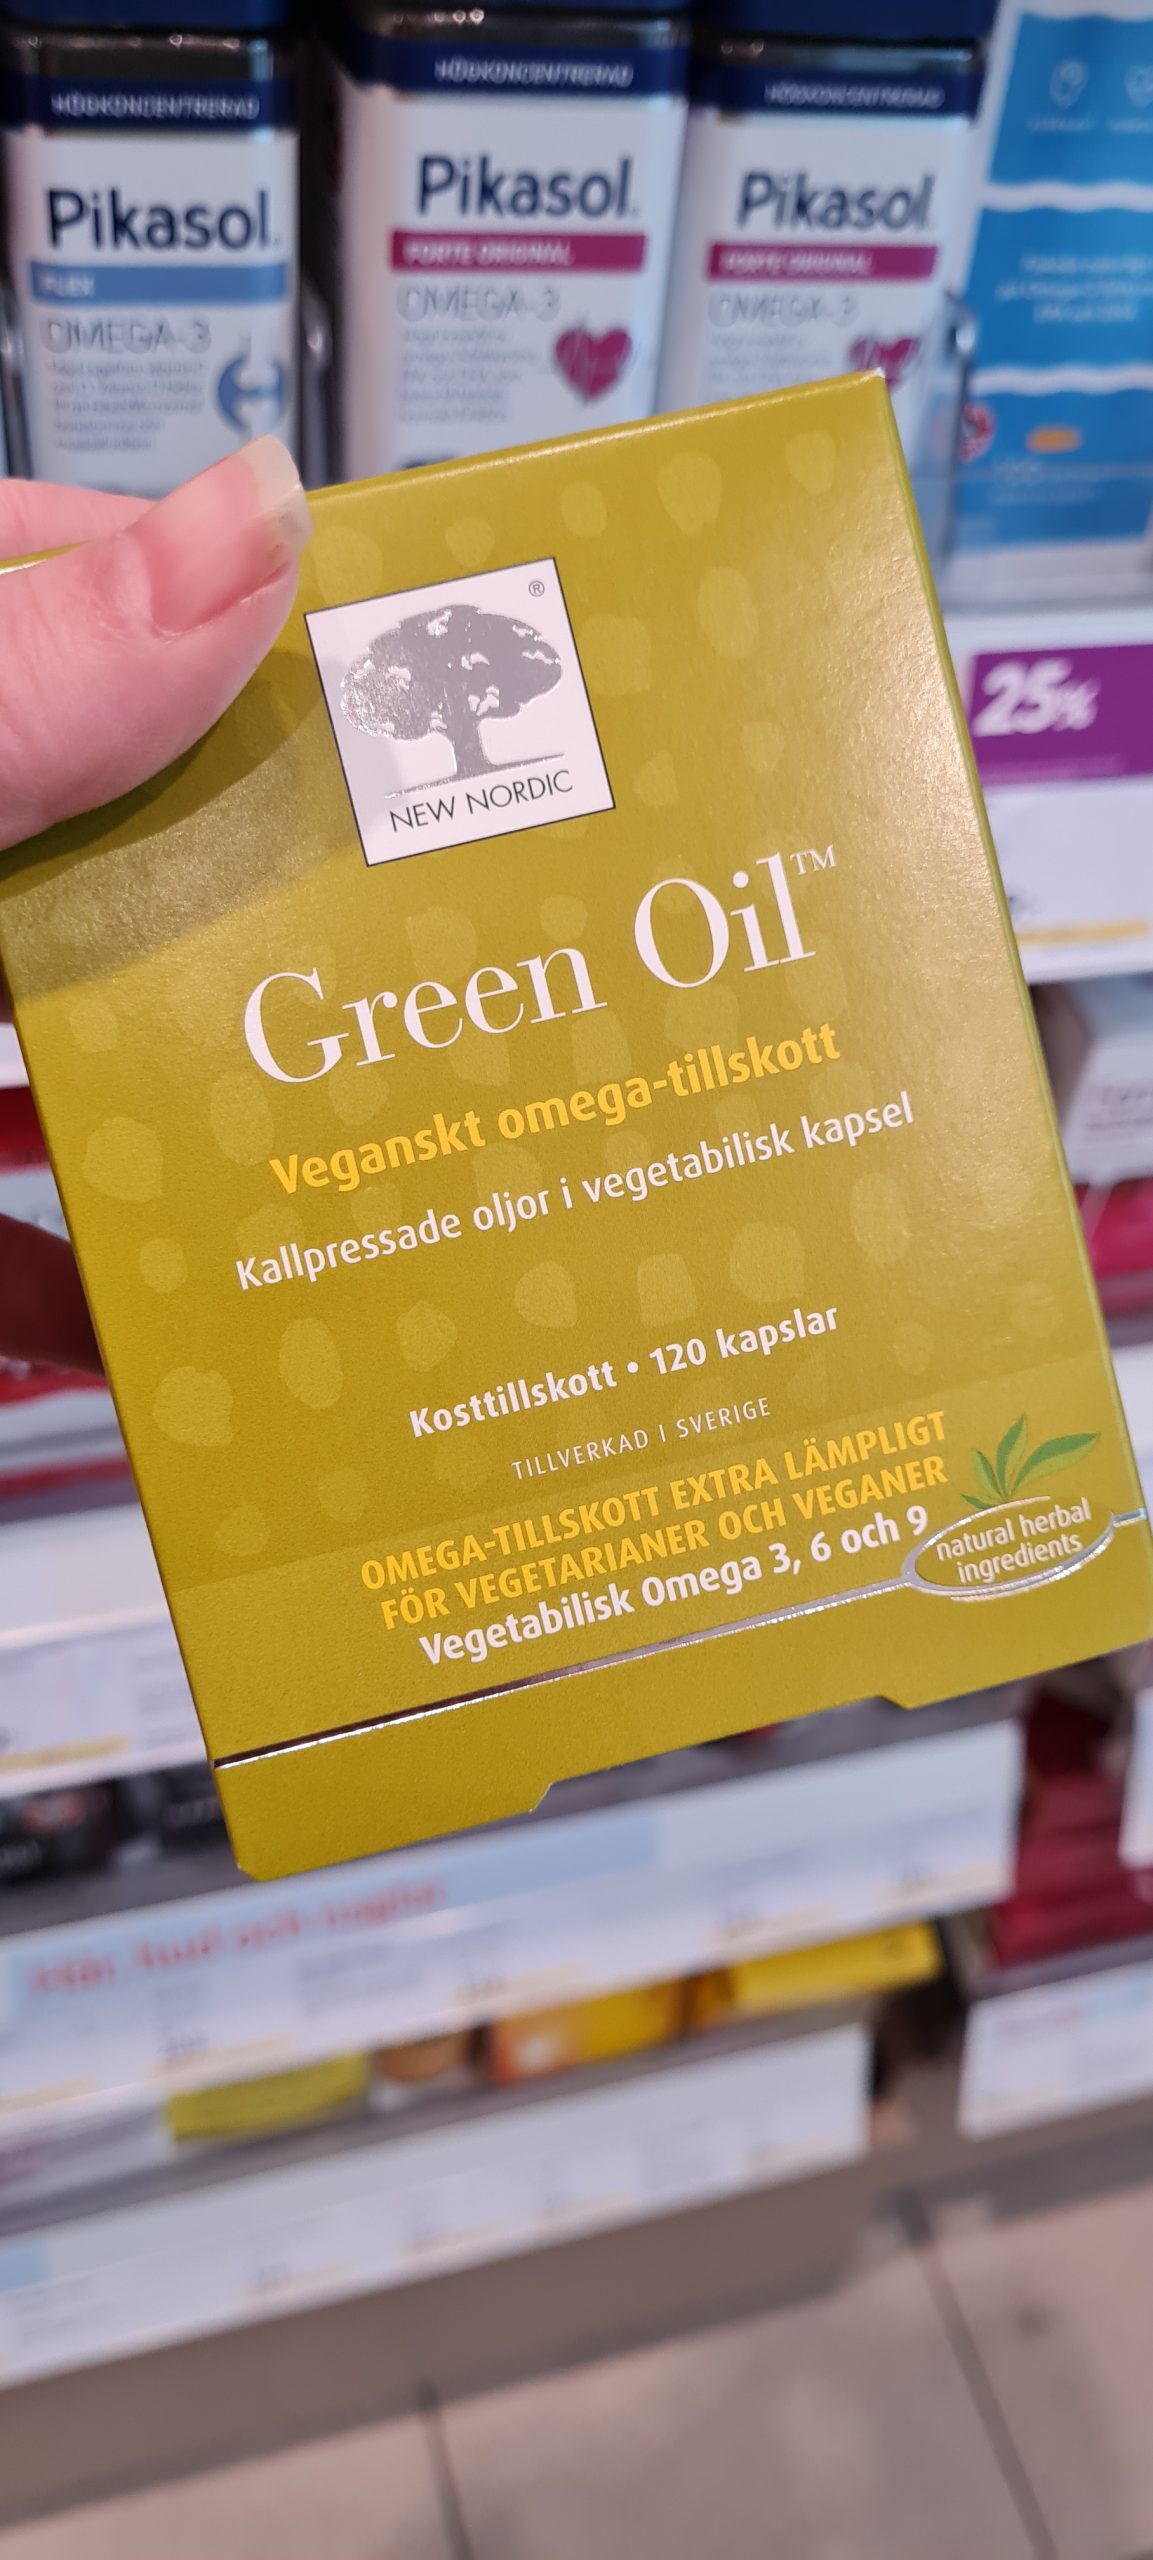 Green oil veganskt omega tillskott från Green Oil